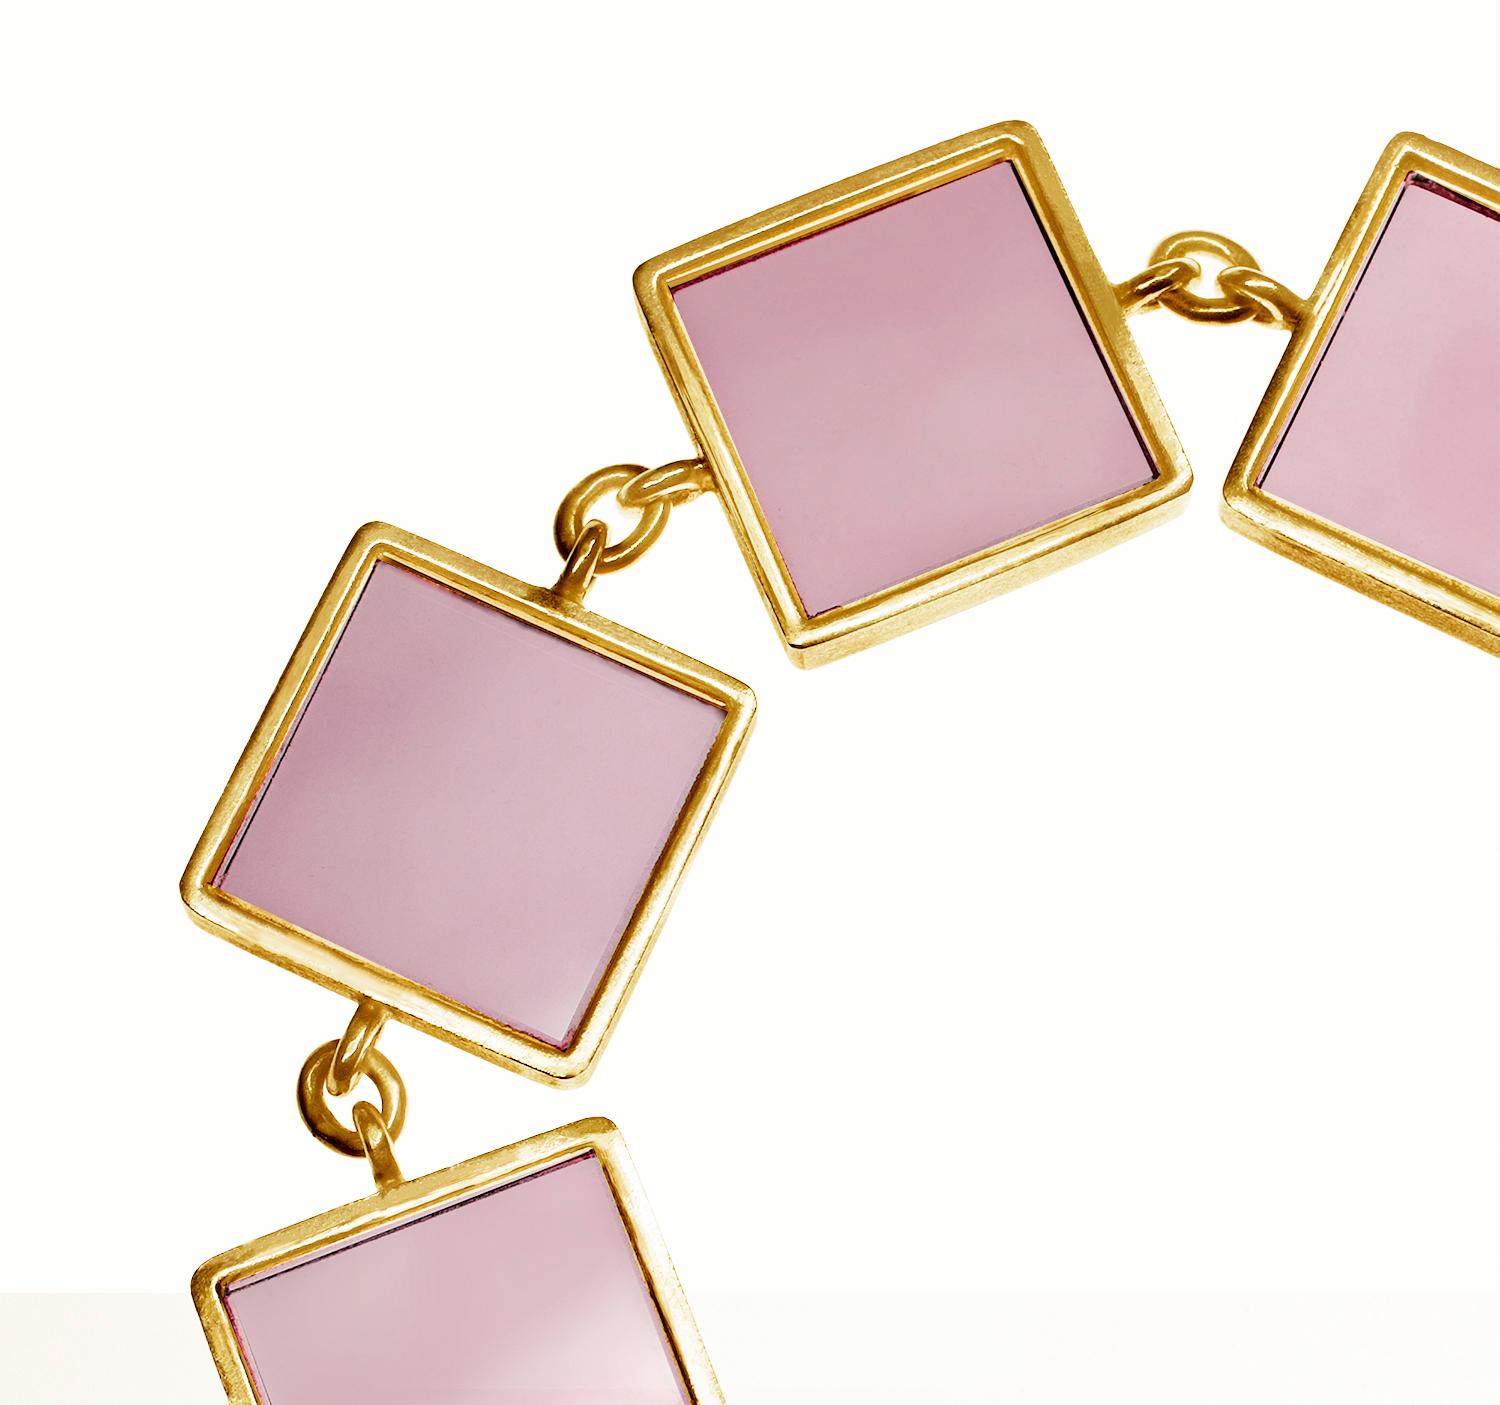 Ce bracelet bijou de créateur présente sept onyx roses de 15x15x3 mm sertis dans de l'or jaune 14 carats. La collection Ink a été présentée dans les numéros publiés par Harper's Bazaar UA et Vogue UA.

Le bracelet brille doucement grâce à l'or et au